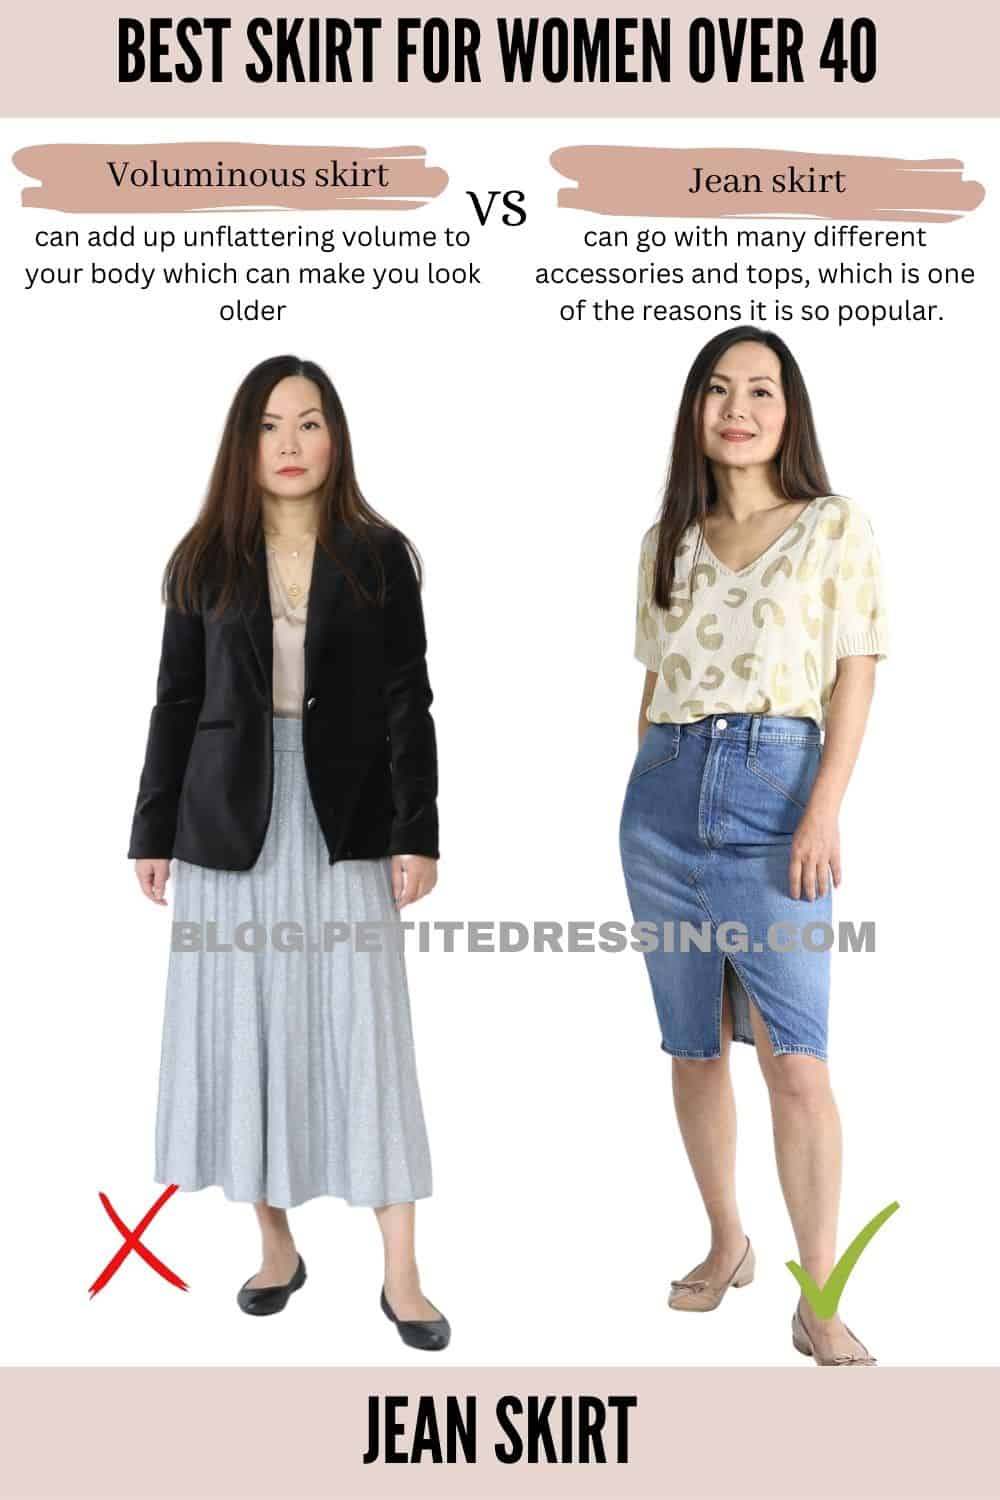 The Skirt Guide for Women Over 40